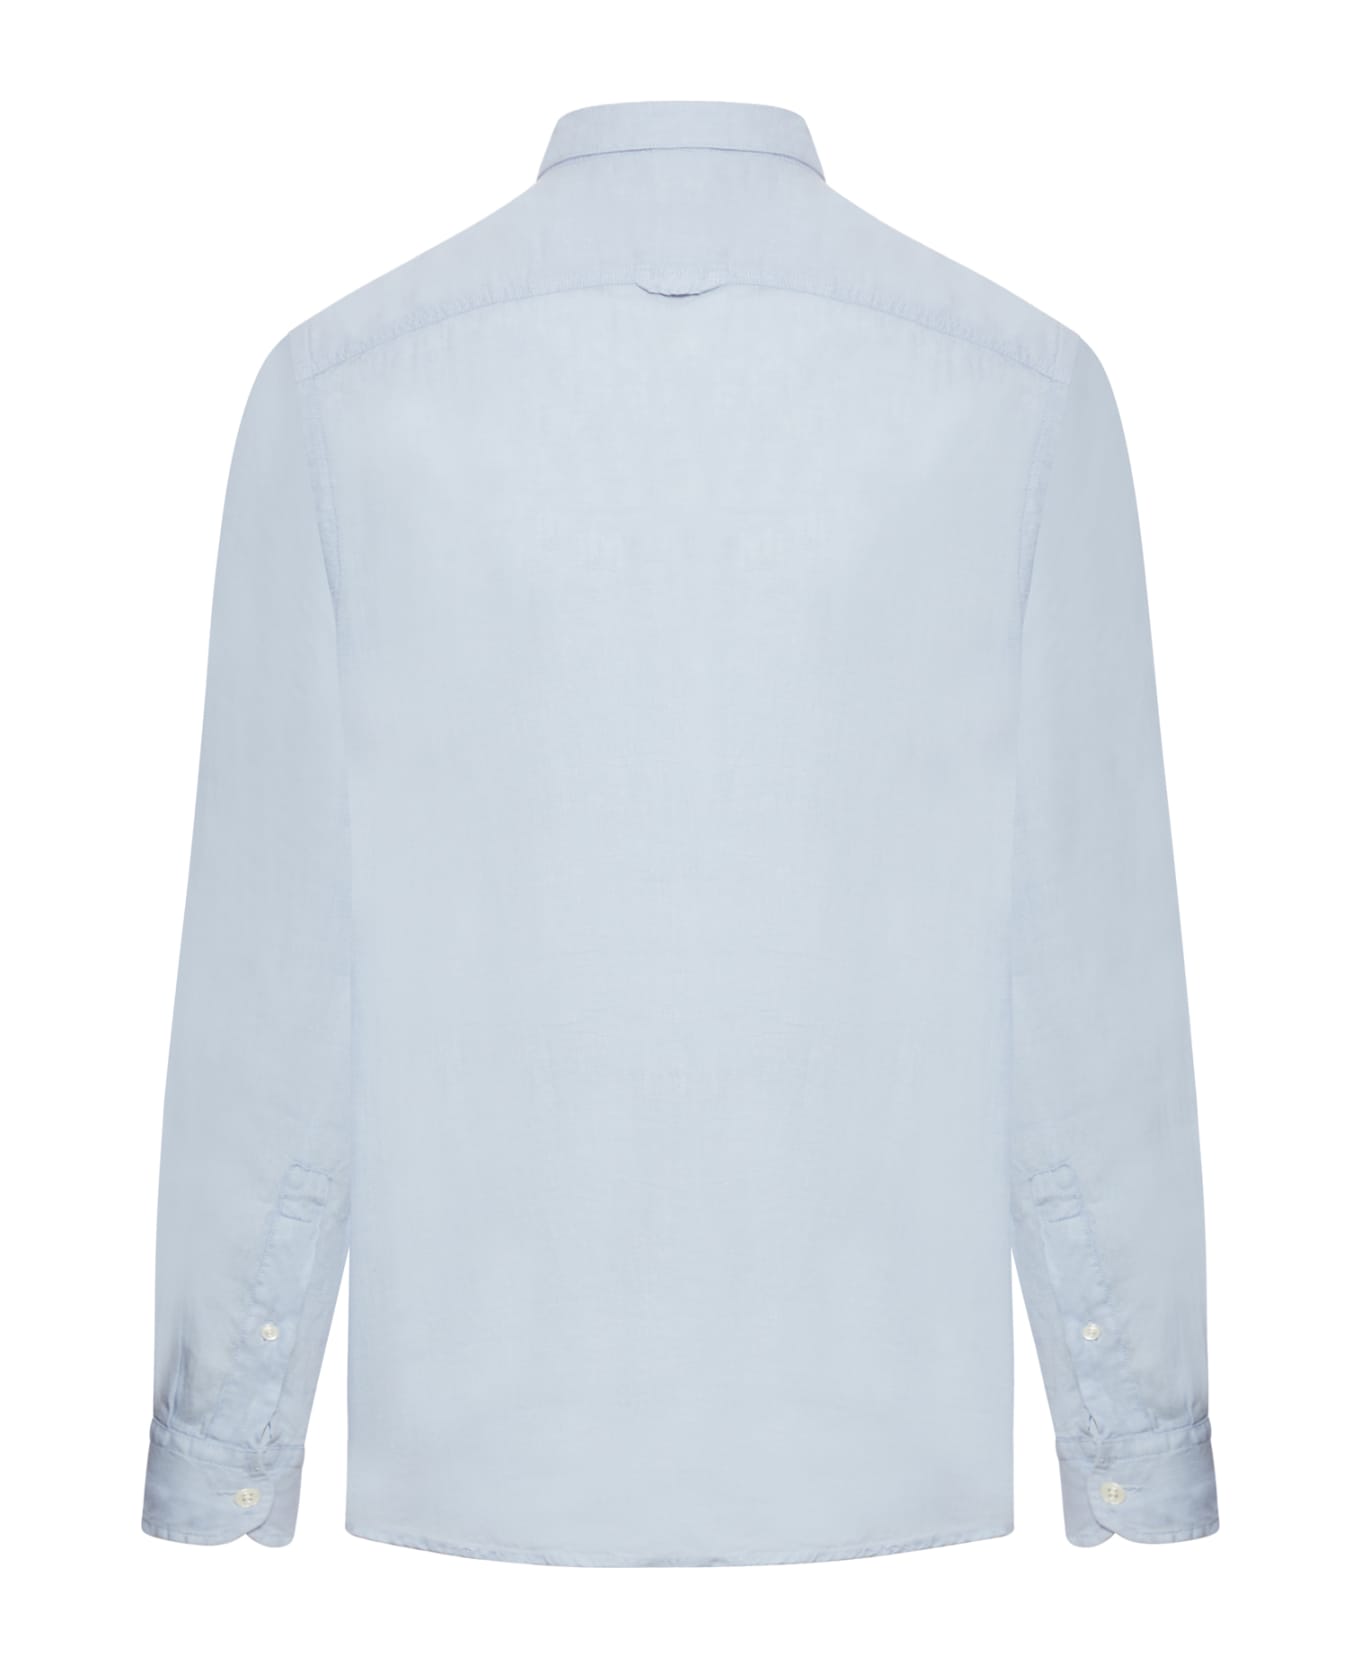 Woolrich Linen Shirt - Pale Indigo